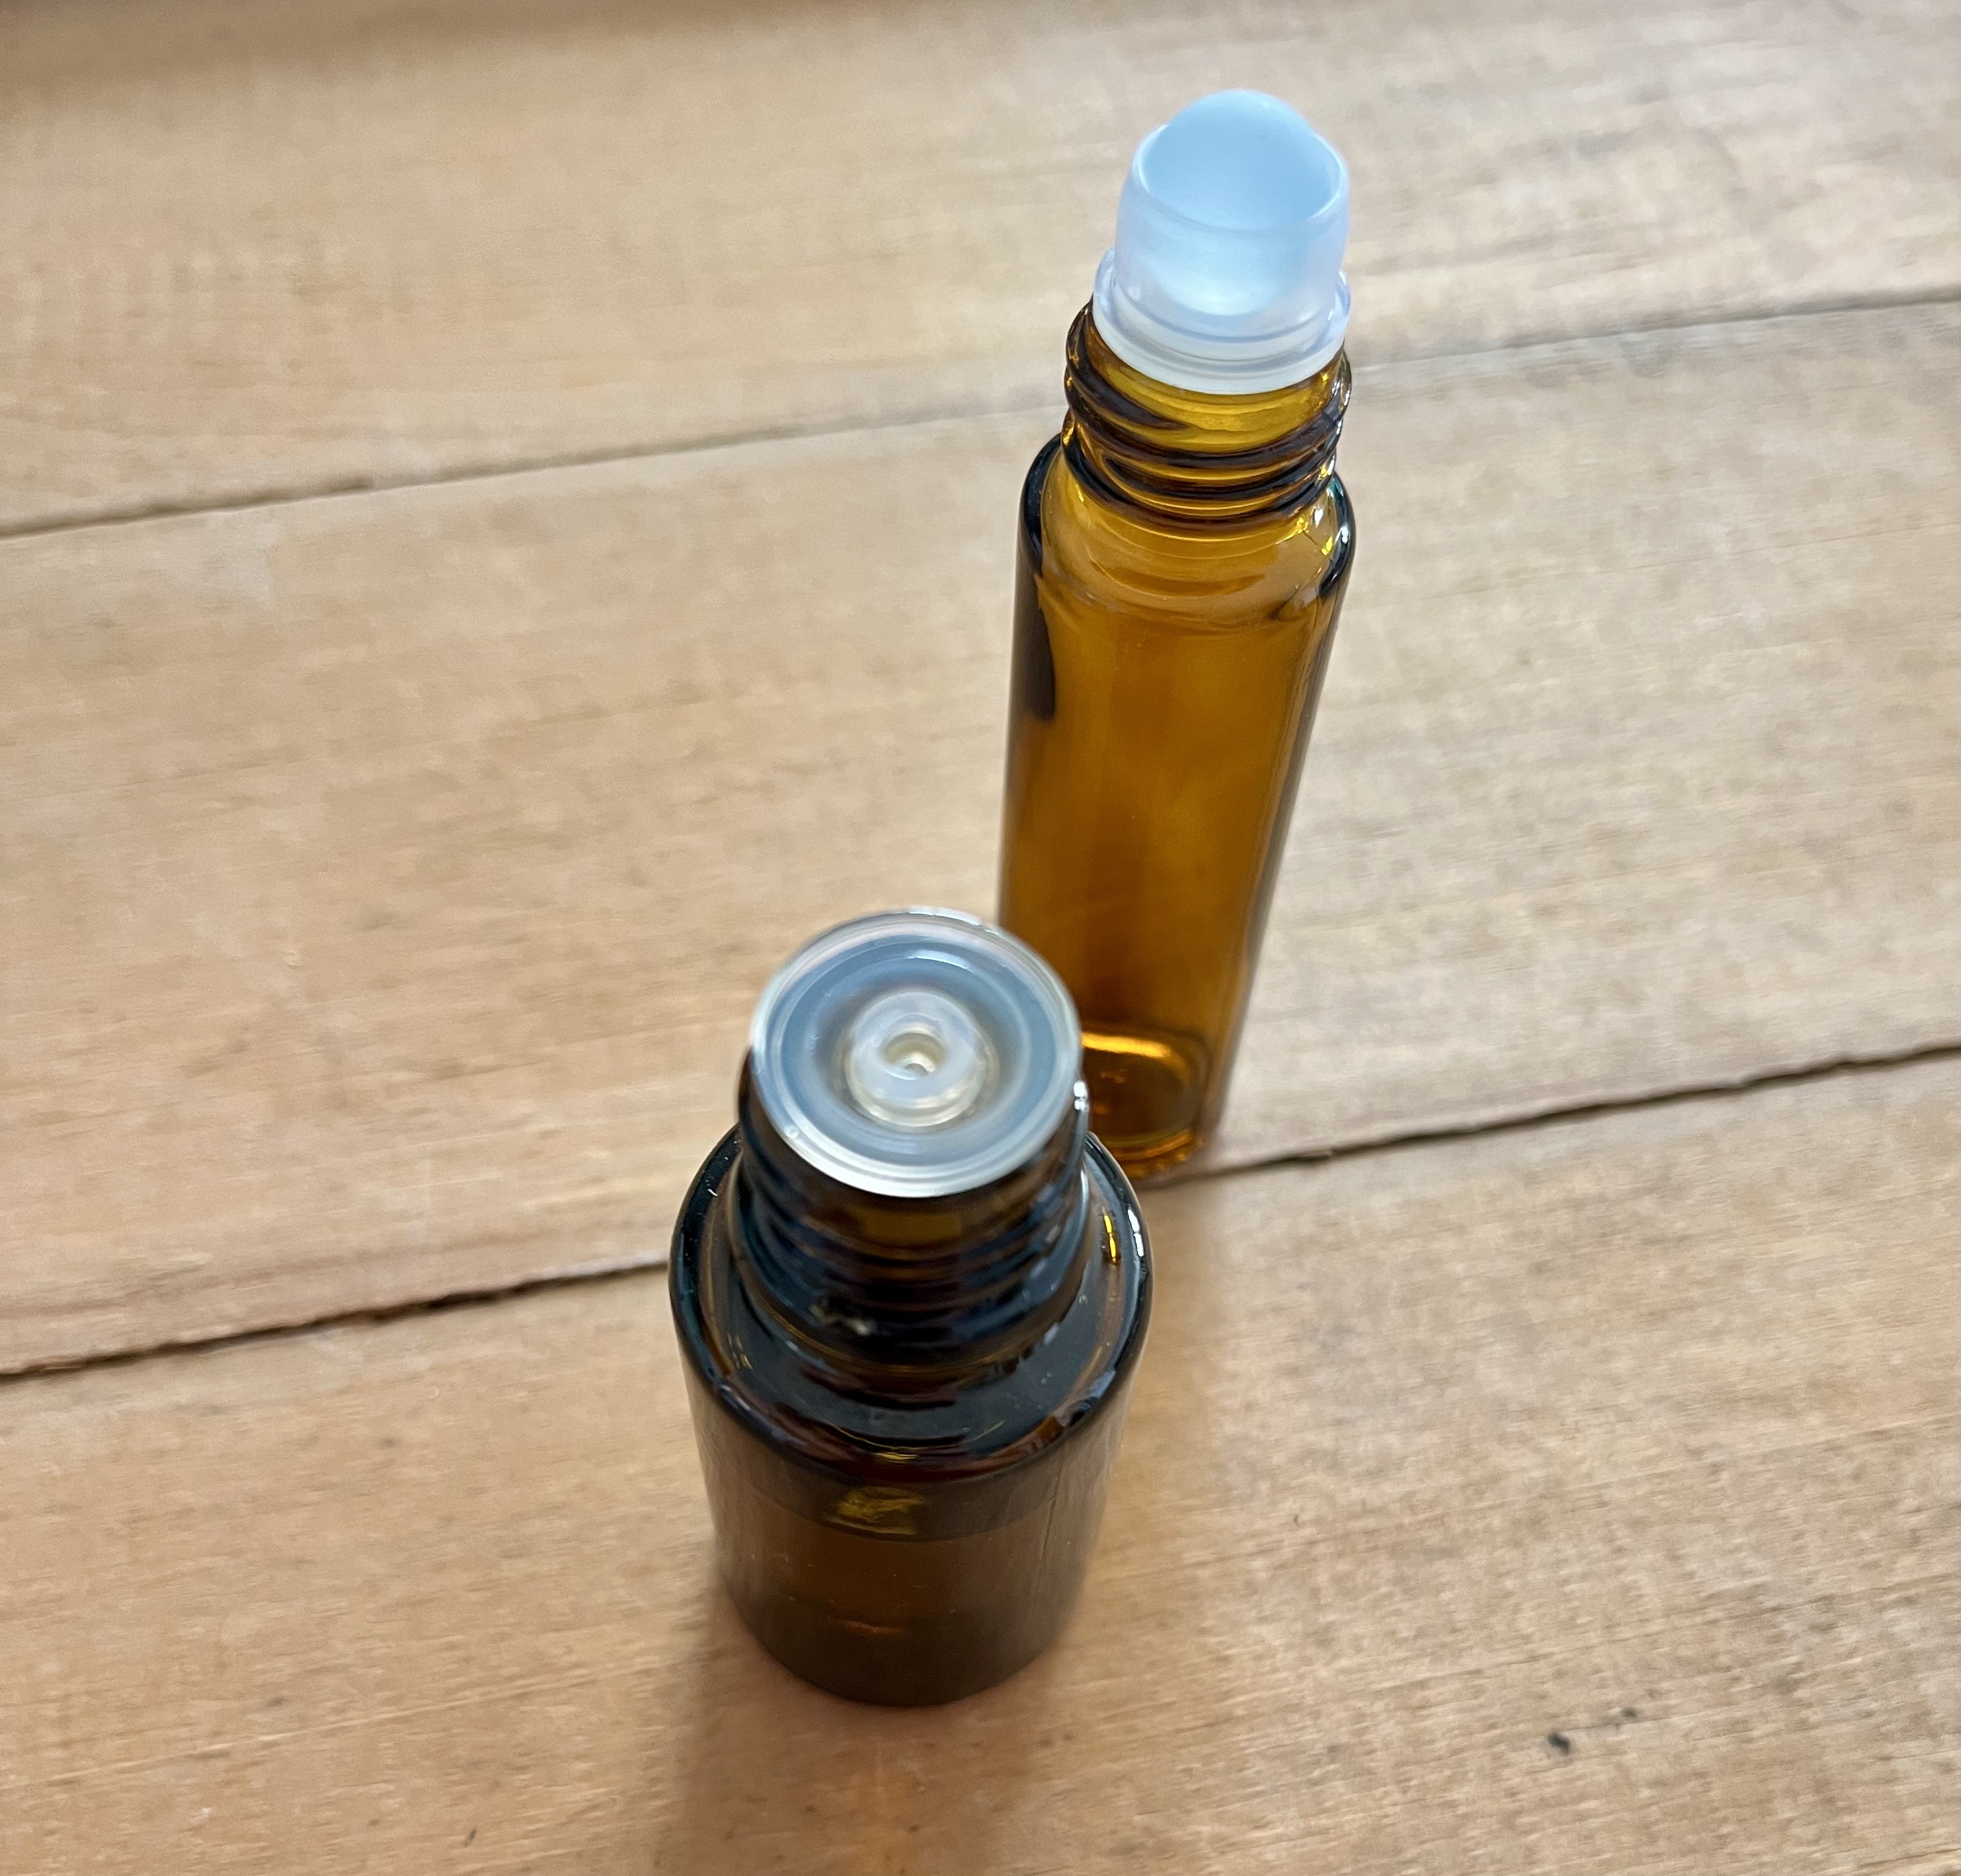 lemongrass essential oil in an amber bottle